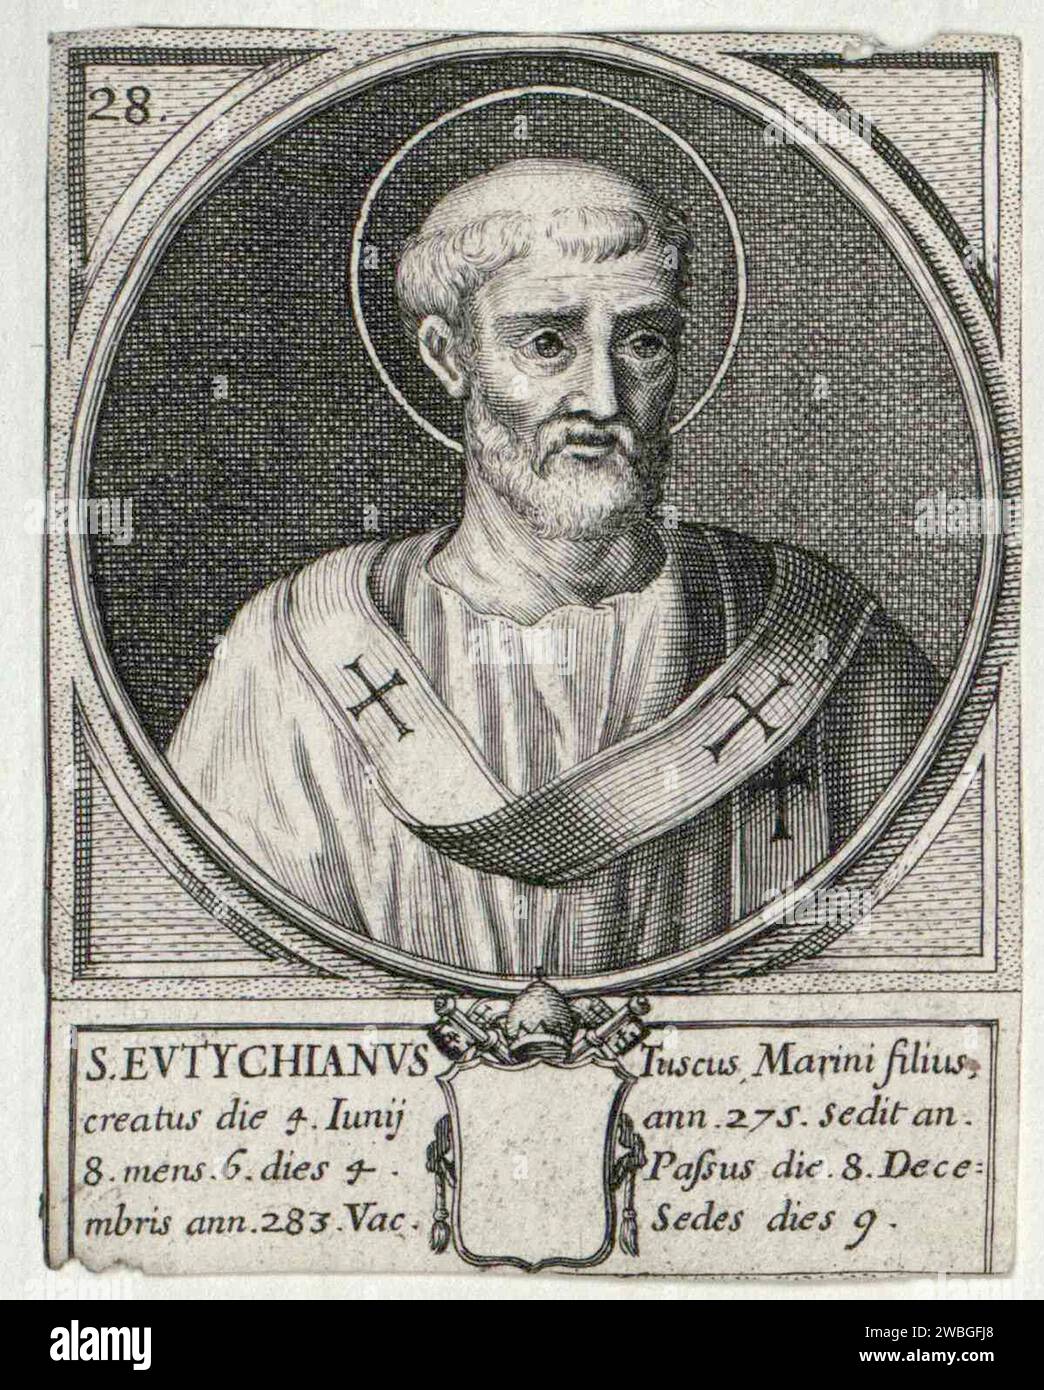 Ein Kupferstich des Papstes Eutychian aus dem 17. Jahrhundert, der Pontiff von 274 bis 283 war. Er war der 27. Papst. Stockfoto